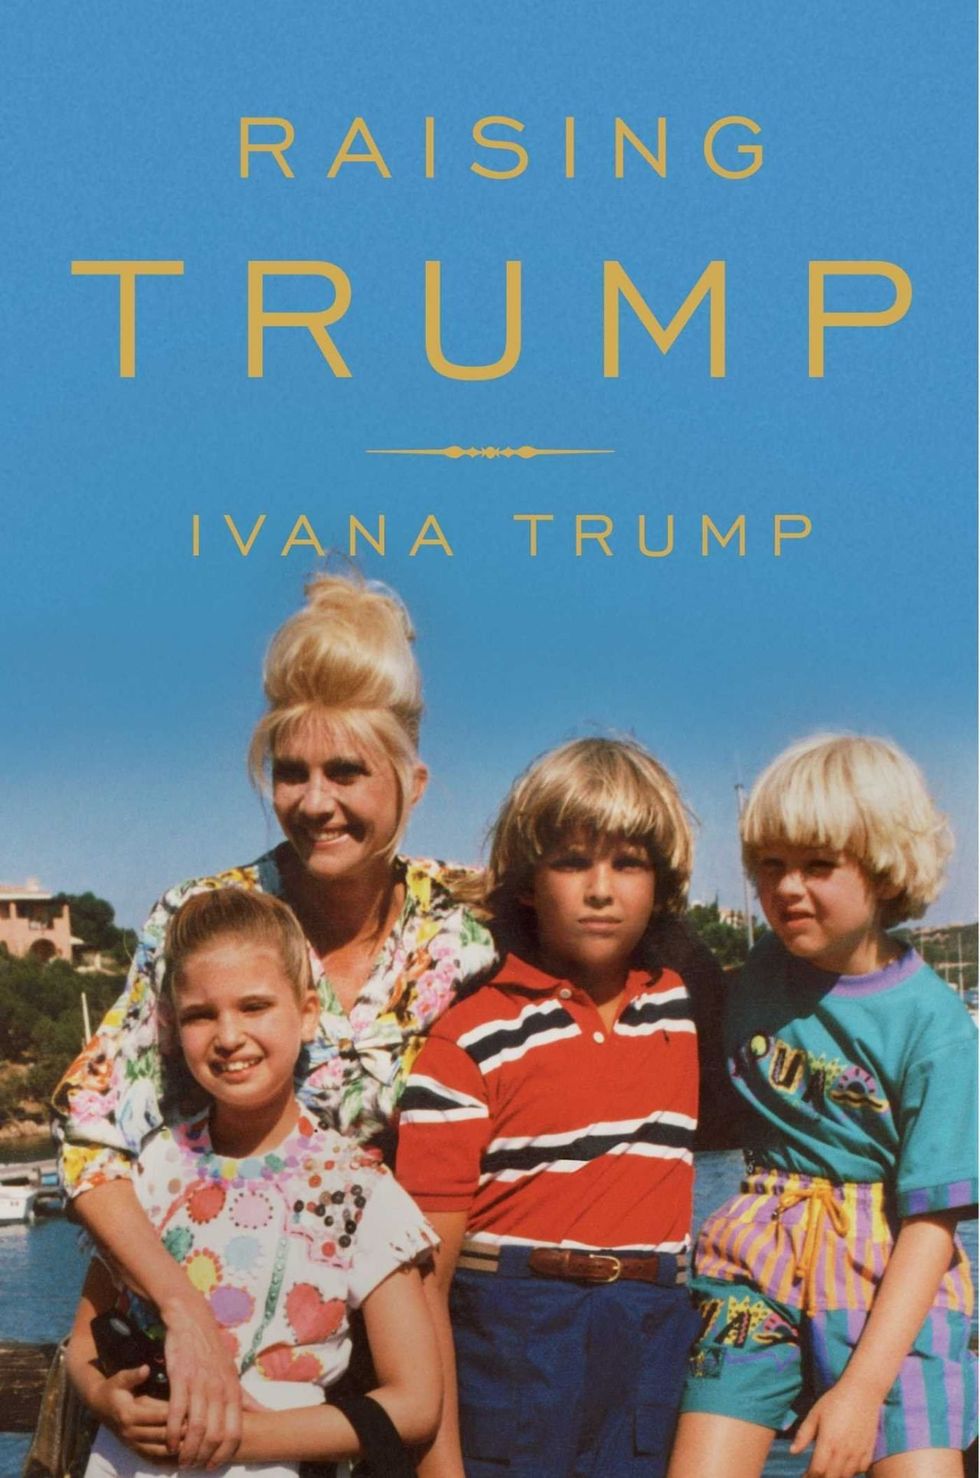 <p>Ivana's <em data-redactor-tag="em">Raising Trump</em>&nbsp;zal op&nbsp;10 oktober gepubliceerd worden. Het boek omschrijft Ivana's reis van het communistische Tsjechoslowakije naar New York, waar ze een zakenvrouw werd en de echtgenote van Donald Trump. Daarnaast bevat het boek ook&nbsp;'unfiltered personal stories'&nbsp;over haar kinderen, Donald Jr., Ivanka en&nbsp;Eric. De drie kinderen hebben 'memories'&nbsp;bijgedragen aan het boek en zijn naar verluidt 'excited' over hun moeders laatste werk.&nbsp;</p><p><span data-redactor-tag="span" data-verified="redactor"></span>Dit is niet de eerste kijk van Ivana in de wereld van het uitgeven van boeken. Ze heeft al de semi-autobigrafische romantische roman&nbsp;<em data-redactor-tag="em"><a href="https://www.amazon.com/Free-Love-Ivana-Trump/dp/0671743716?ie=UTF8&amp;tag=cosmopolitan_auto-append-20" target="_blank">For Love Alone</a></em>&nbsp;geschreven en&nbsp;<em data-redactor-tag="em"><a href="https://www.amazon.com/BEST-YET-COME-Trump/dp/0671865706/ref=sr_1_2?s=books&amp;ie=UTF8&amp;qid=1469131525&amp;sr=1-2&amp;keywords=The+Best+Is+Yet+to+Come%3A+Coping+With+Divorce+and+Enjoying+Life+Again" target="_blank">The Best Is Yet to Come: Coping With Divorce and Enjoying Life Again</a></em><span class="redactor-invisible-space" data-verified="redactor" data-redactor-tag="span" data-redactor-class="redactor-invisible-space">, een soort zelfhulpboek</span>.</p>